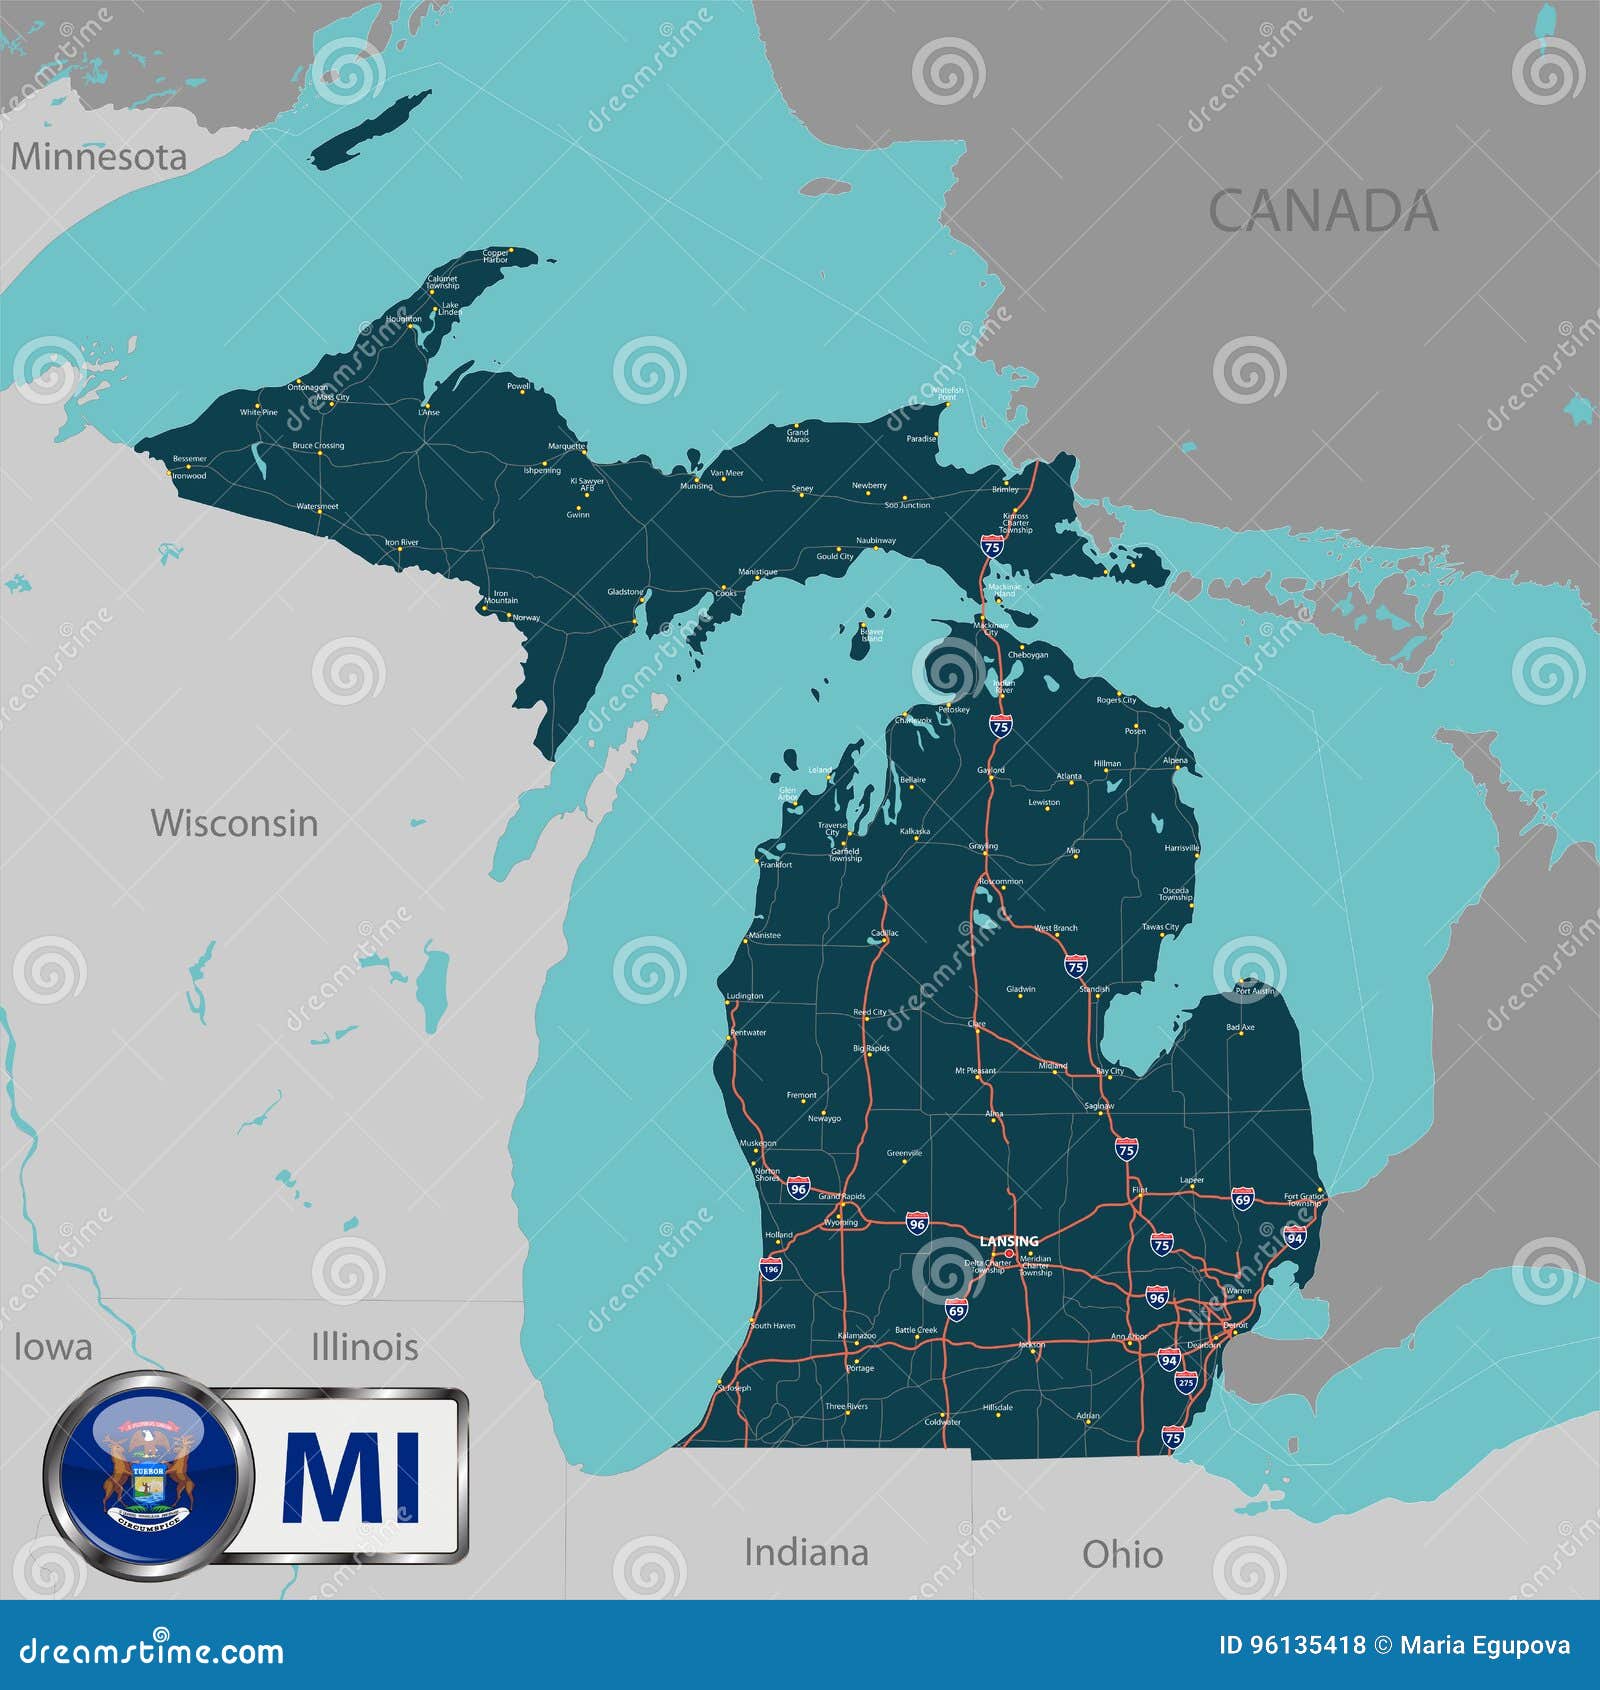 map of state michigan, usa